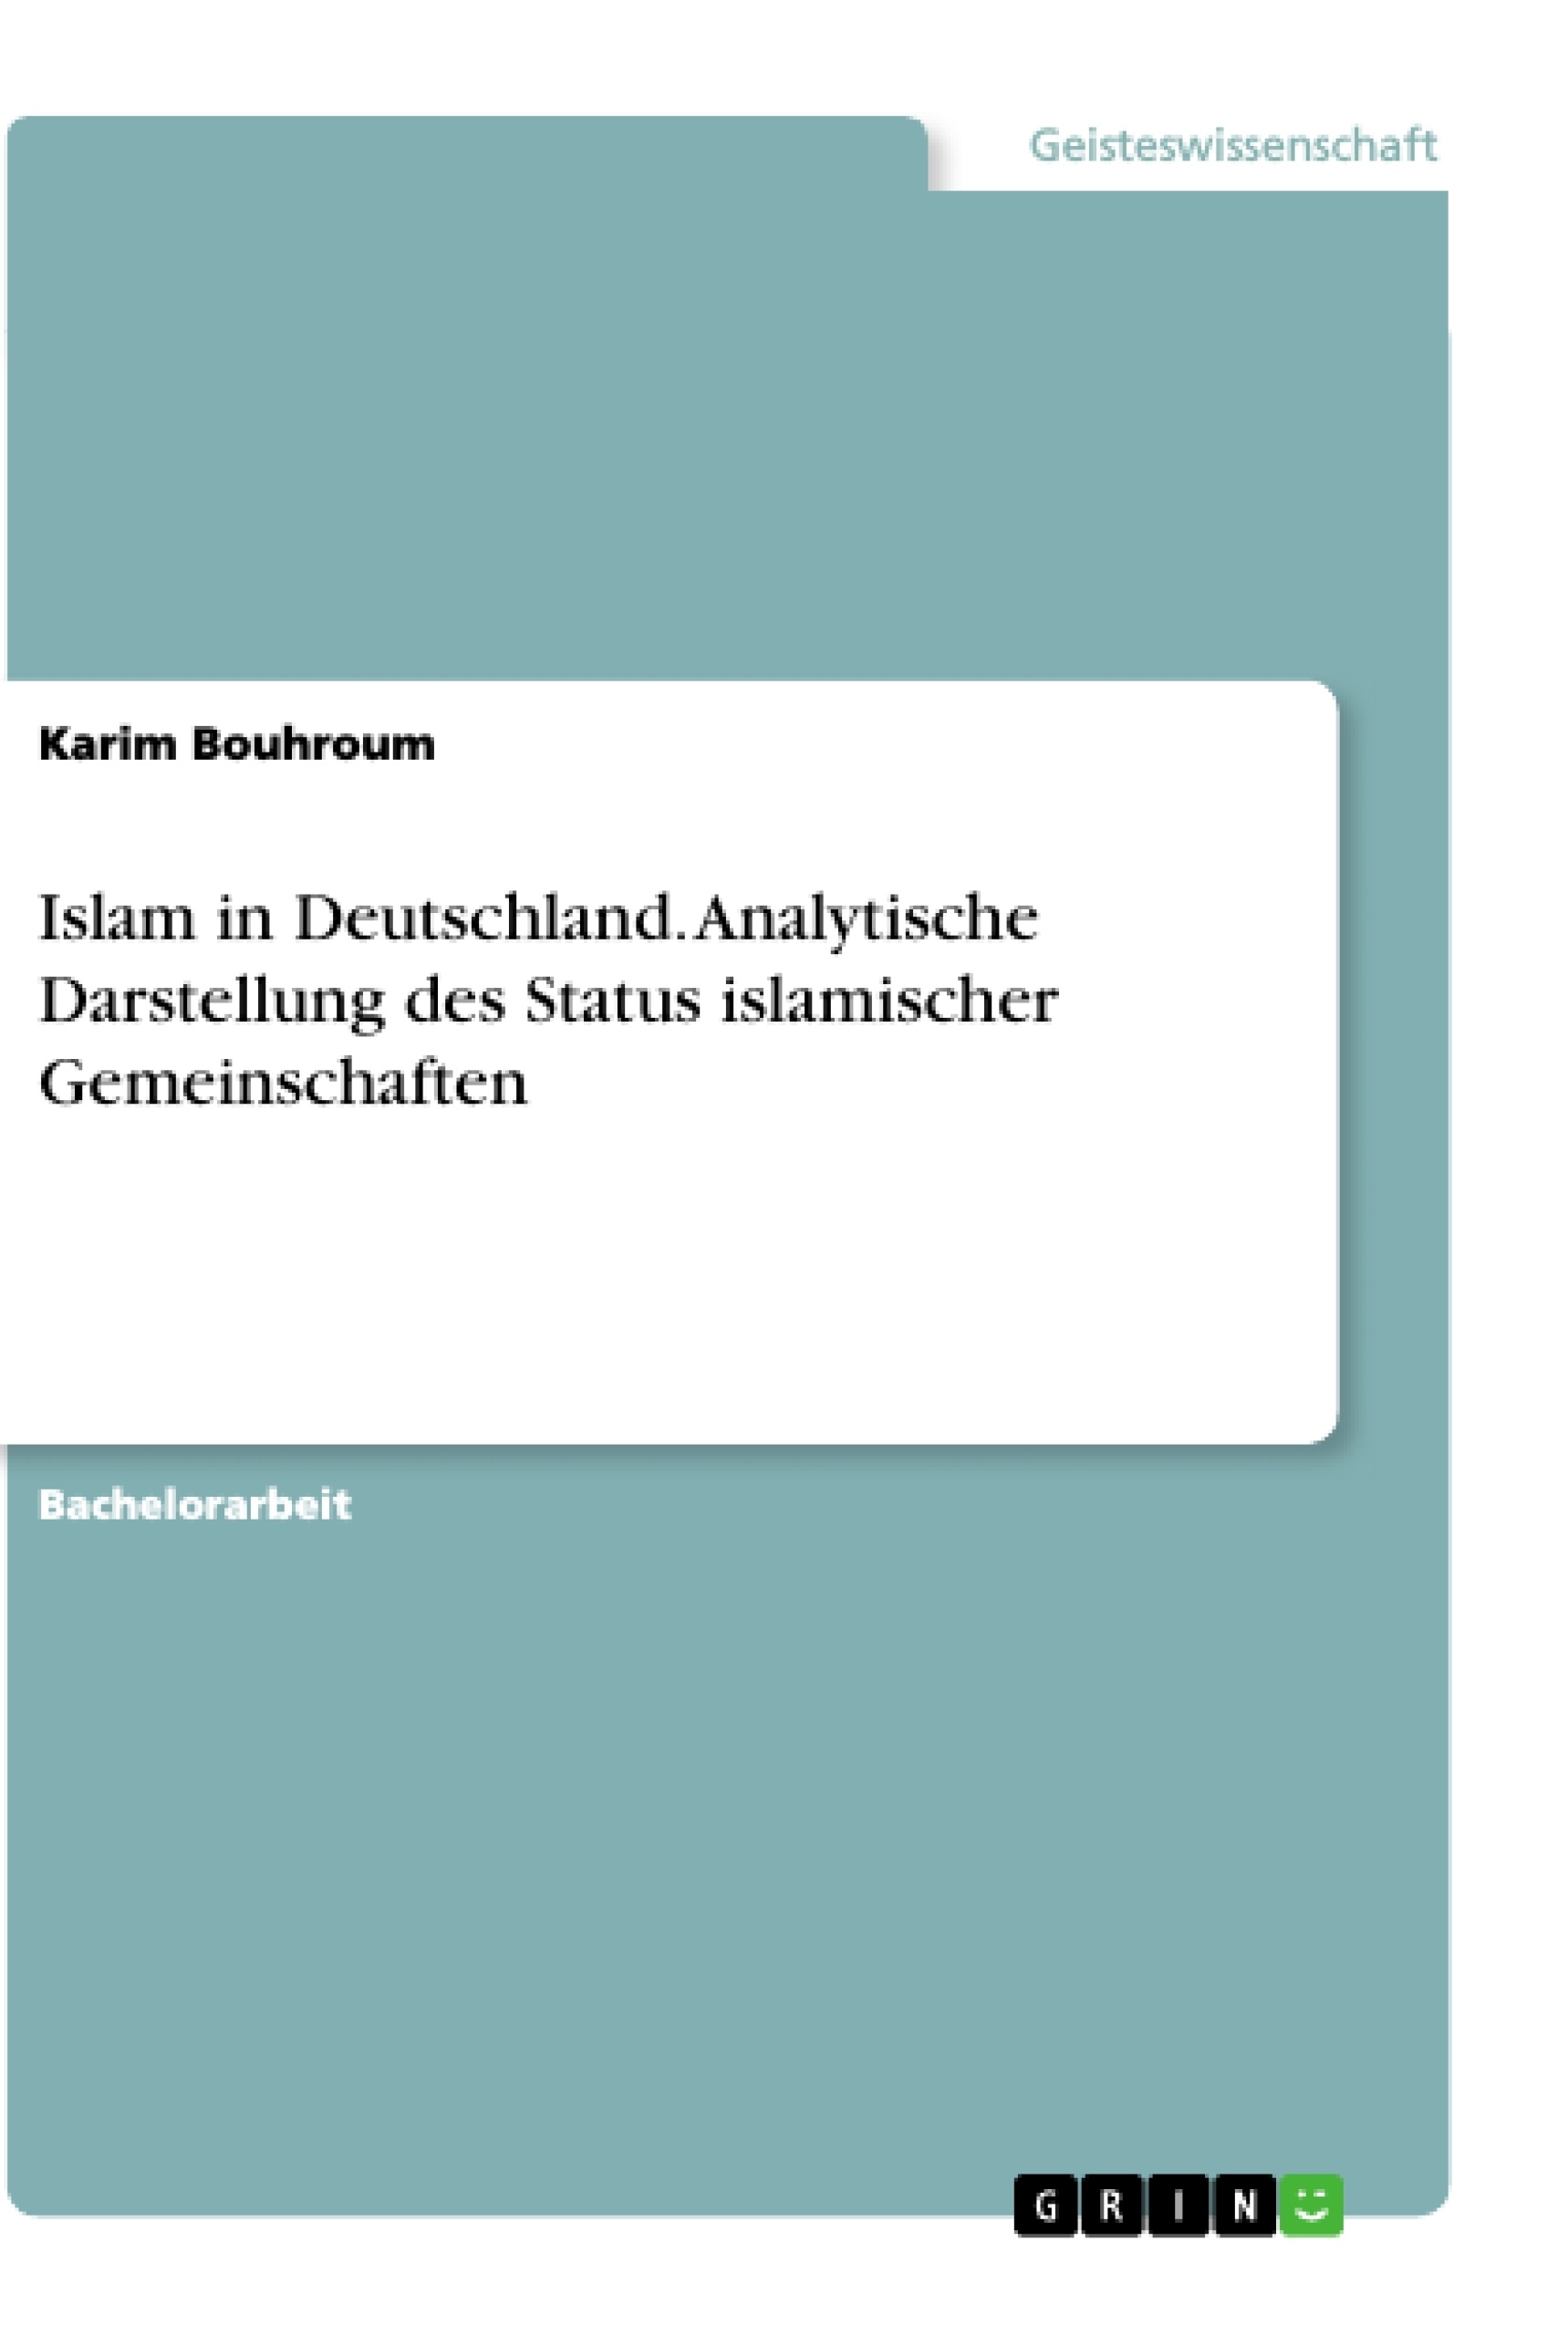 Title: Islam in Deutschland. Analytische Darstellung des Status islamischer Gemeinschaften